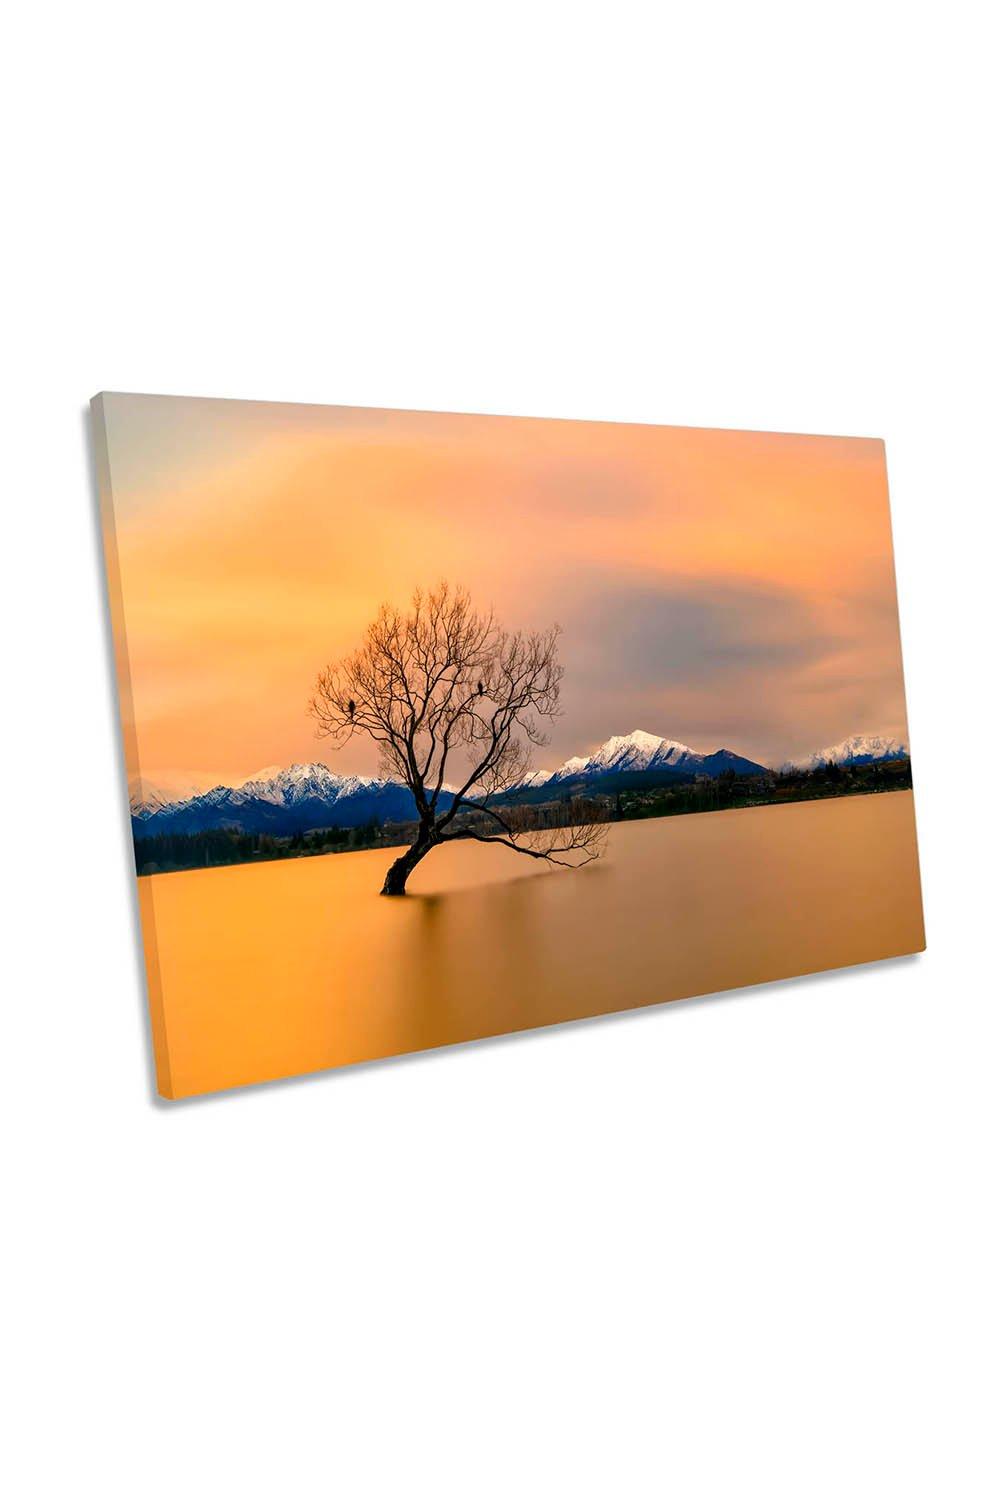 Morning Orange Glow Lake Wanaka New Zealand Canvas Wall Art Picture Print